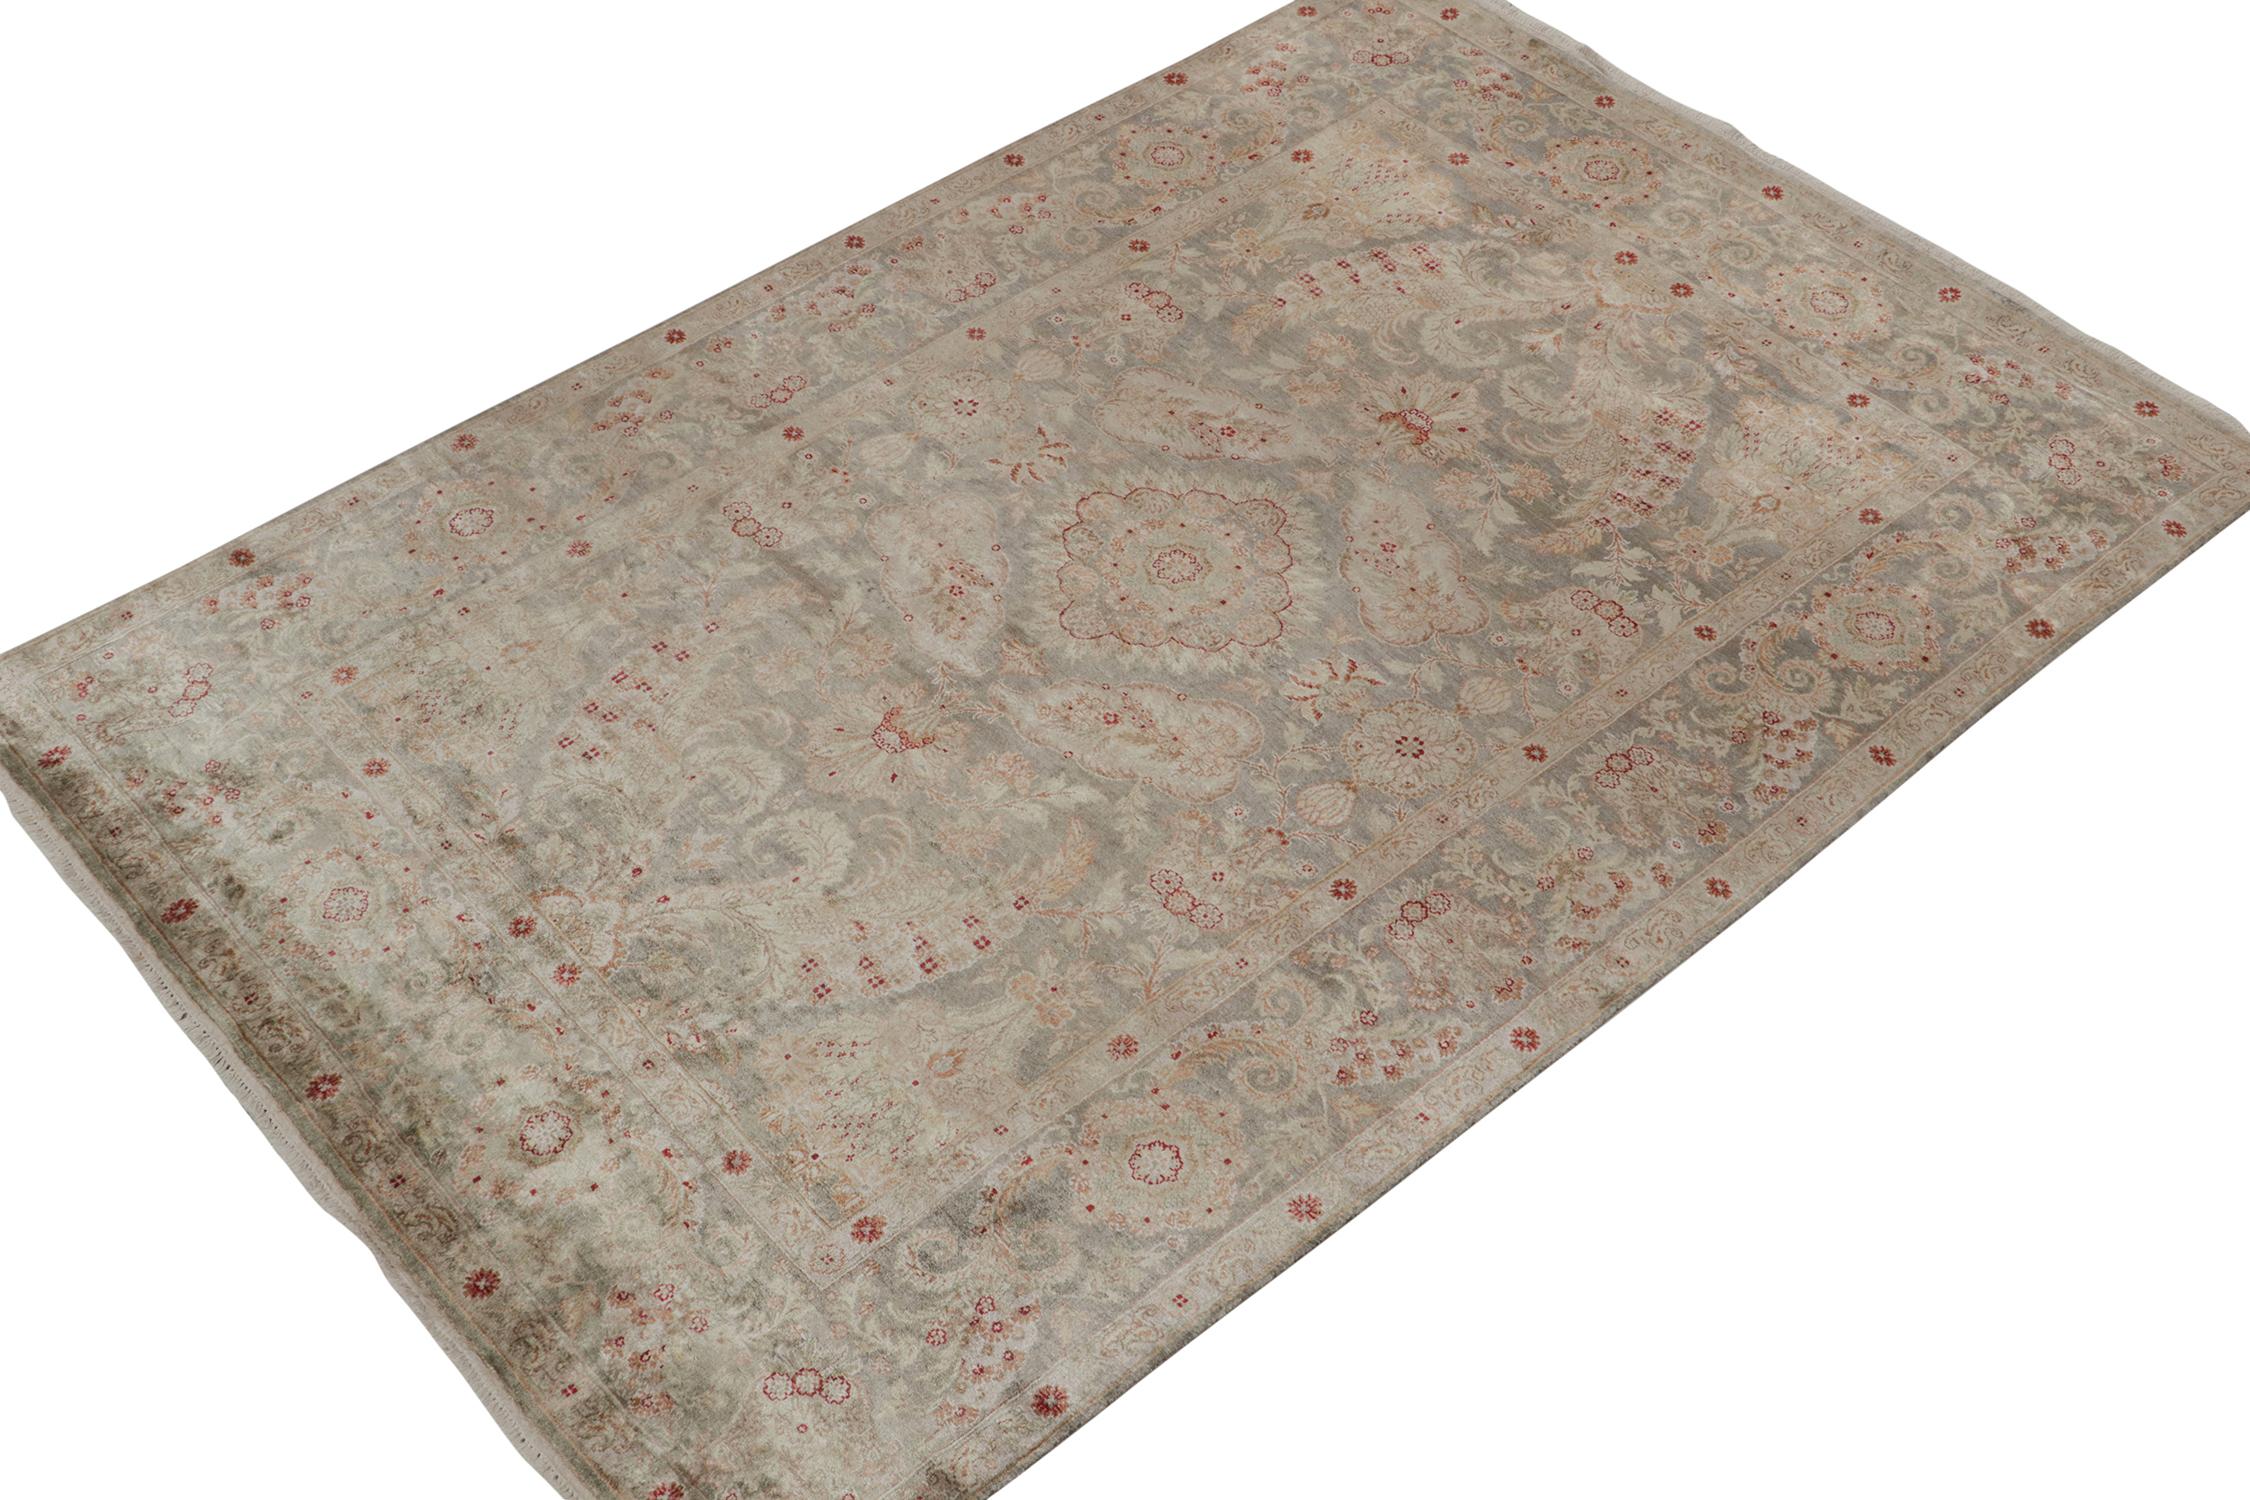 Ein 6x9 Teppich, inspiriert von traditionellen Teppichstilen, aus der Modern Classics Kollektion von Rug & Kilim. Handgeknüpft aus Wolle, die ein Zusammenspiel von opulenten Tönen in floralen Mustern mit klassischer Anmut spielt.
Weiter zum